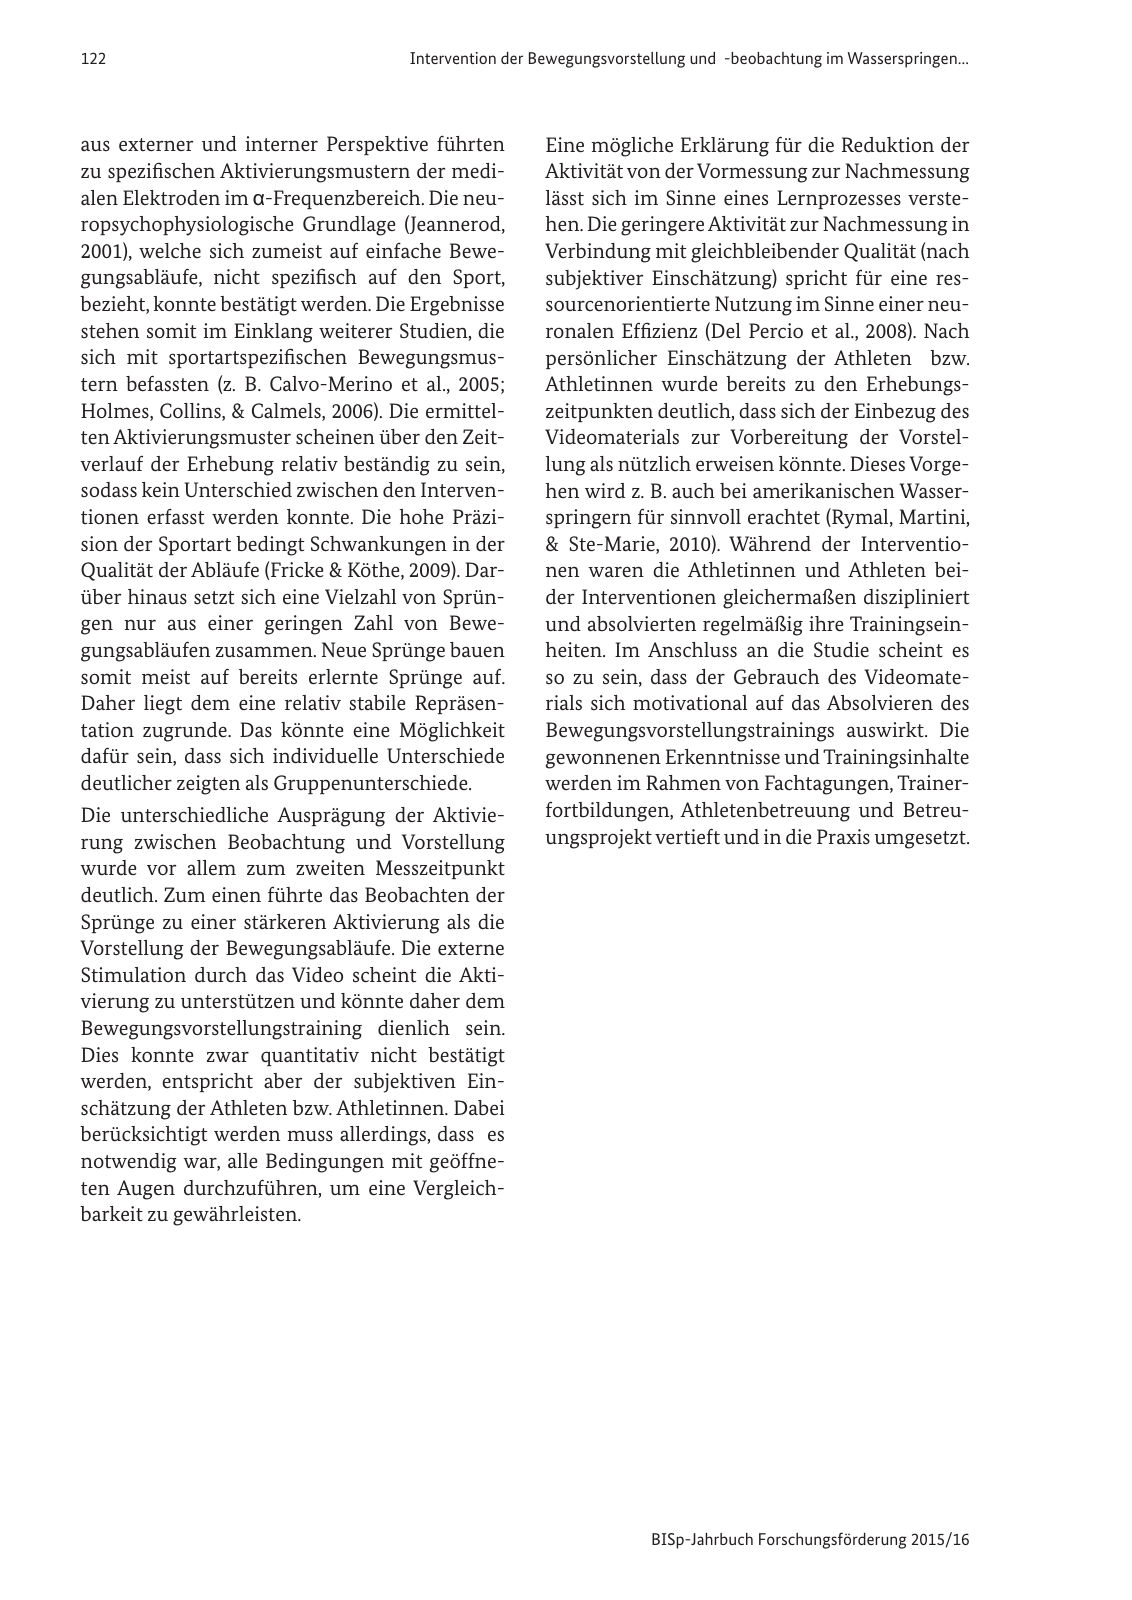 Vorschau BISp-Jahrbuch Forschungsförderung 2015/16 Seite 124